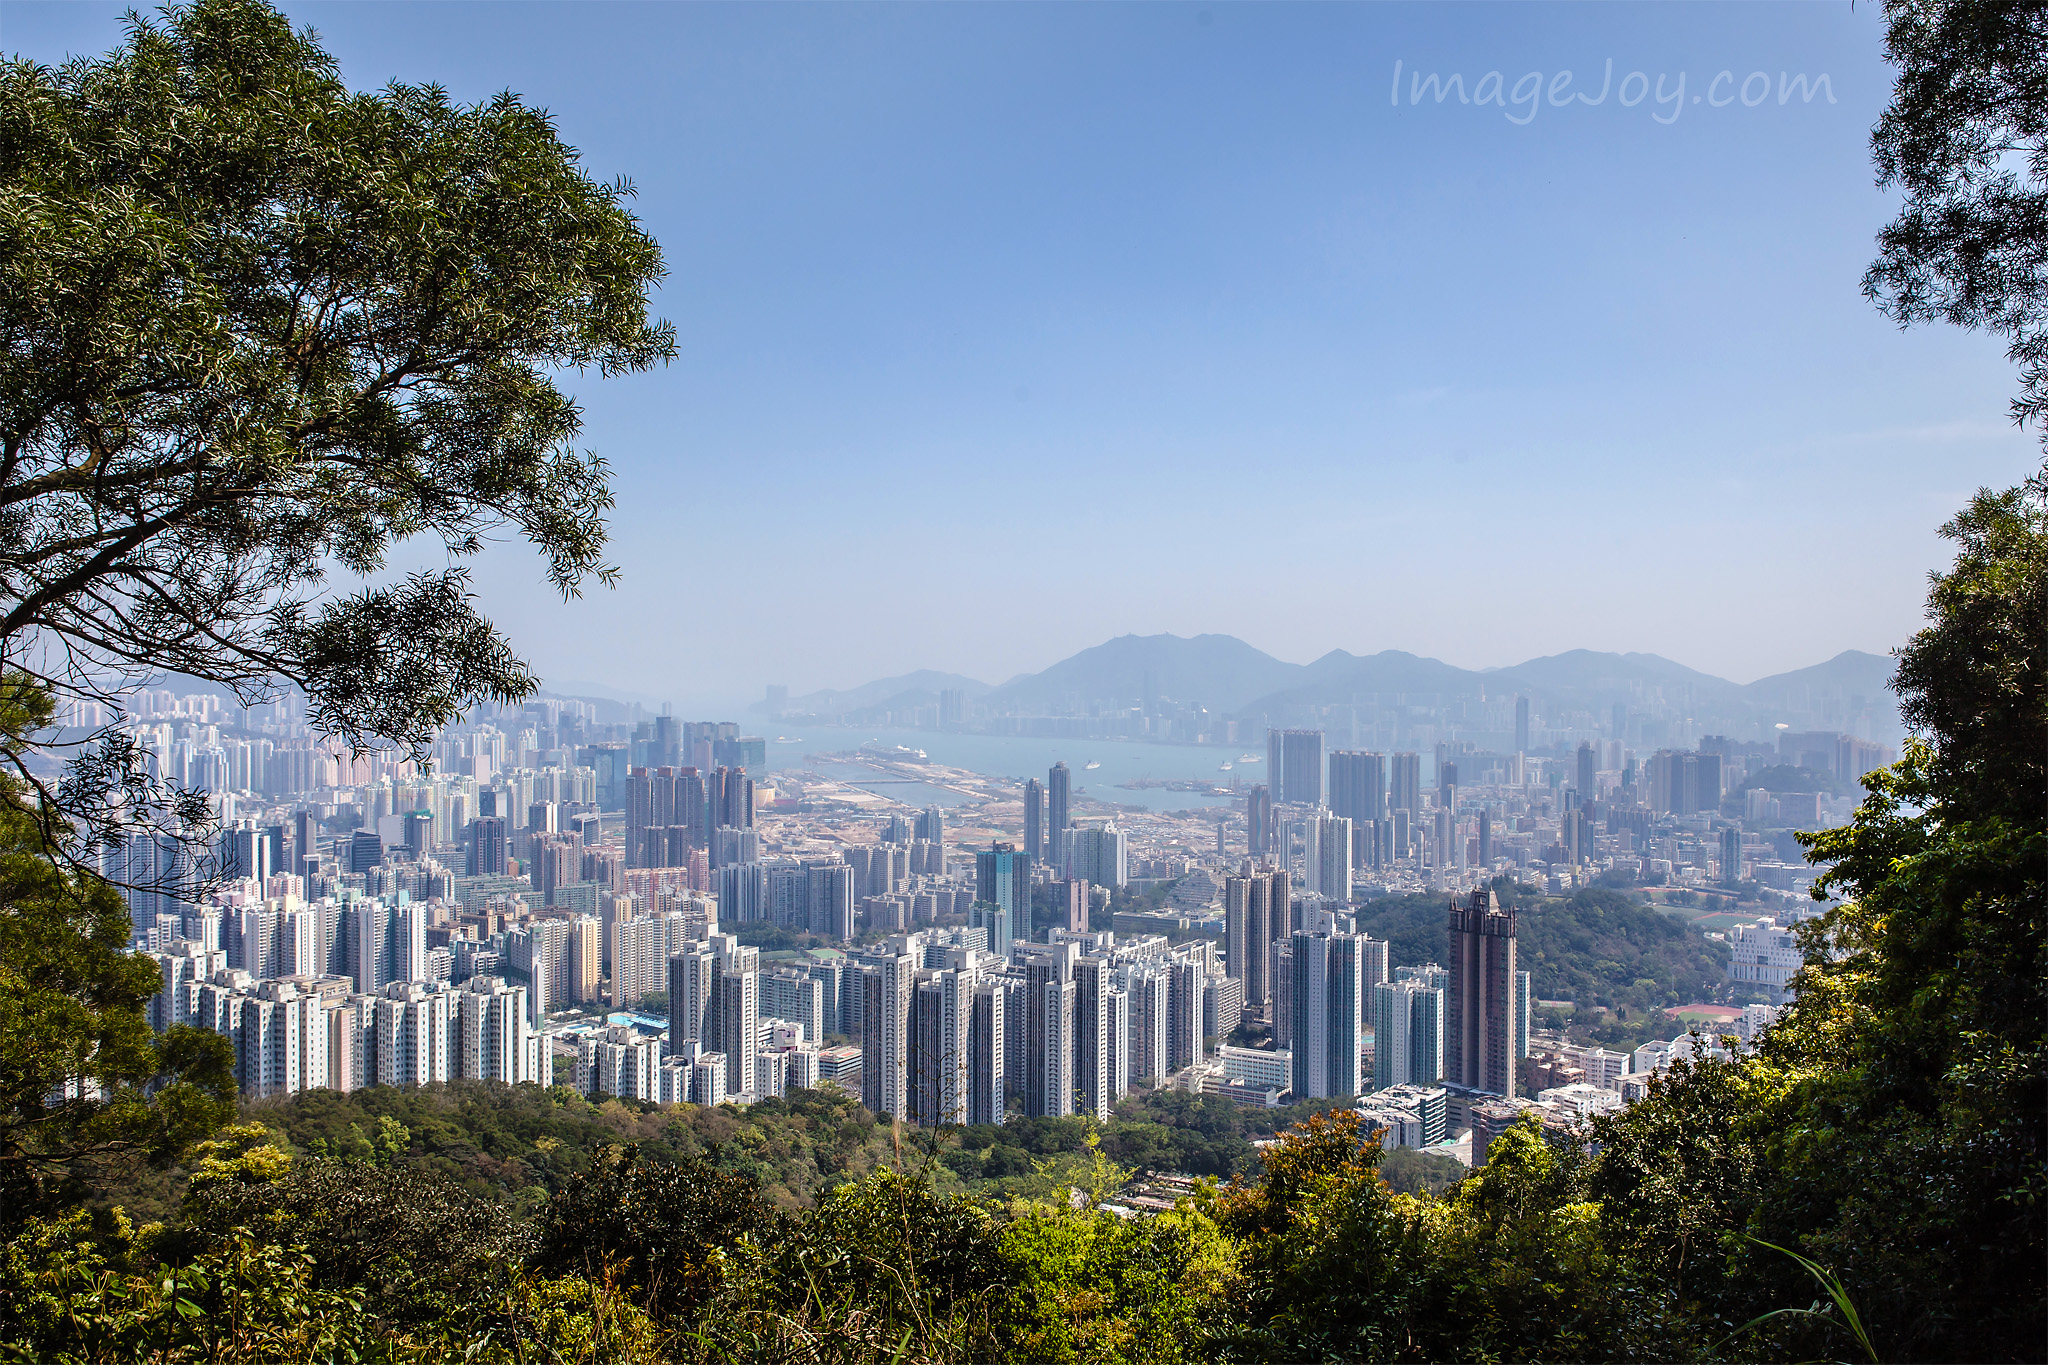 獅子山 在獅子頭上看風景 香港好去處 香港攝影景點 Imagejoy